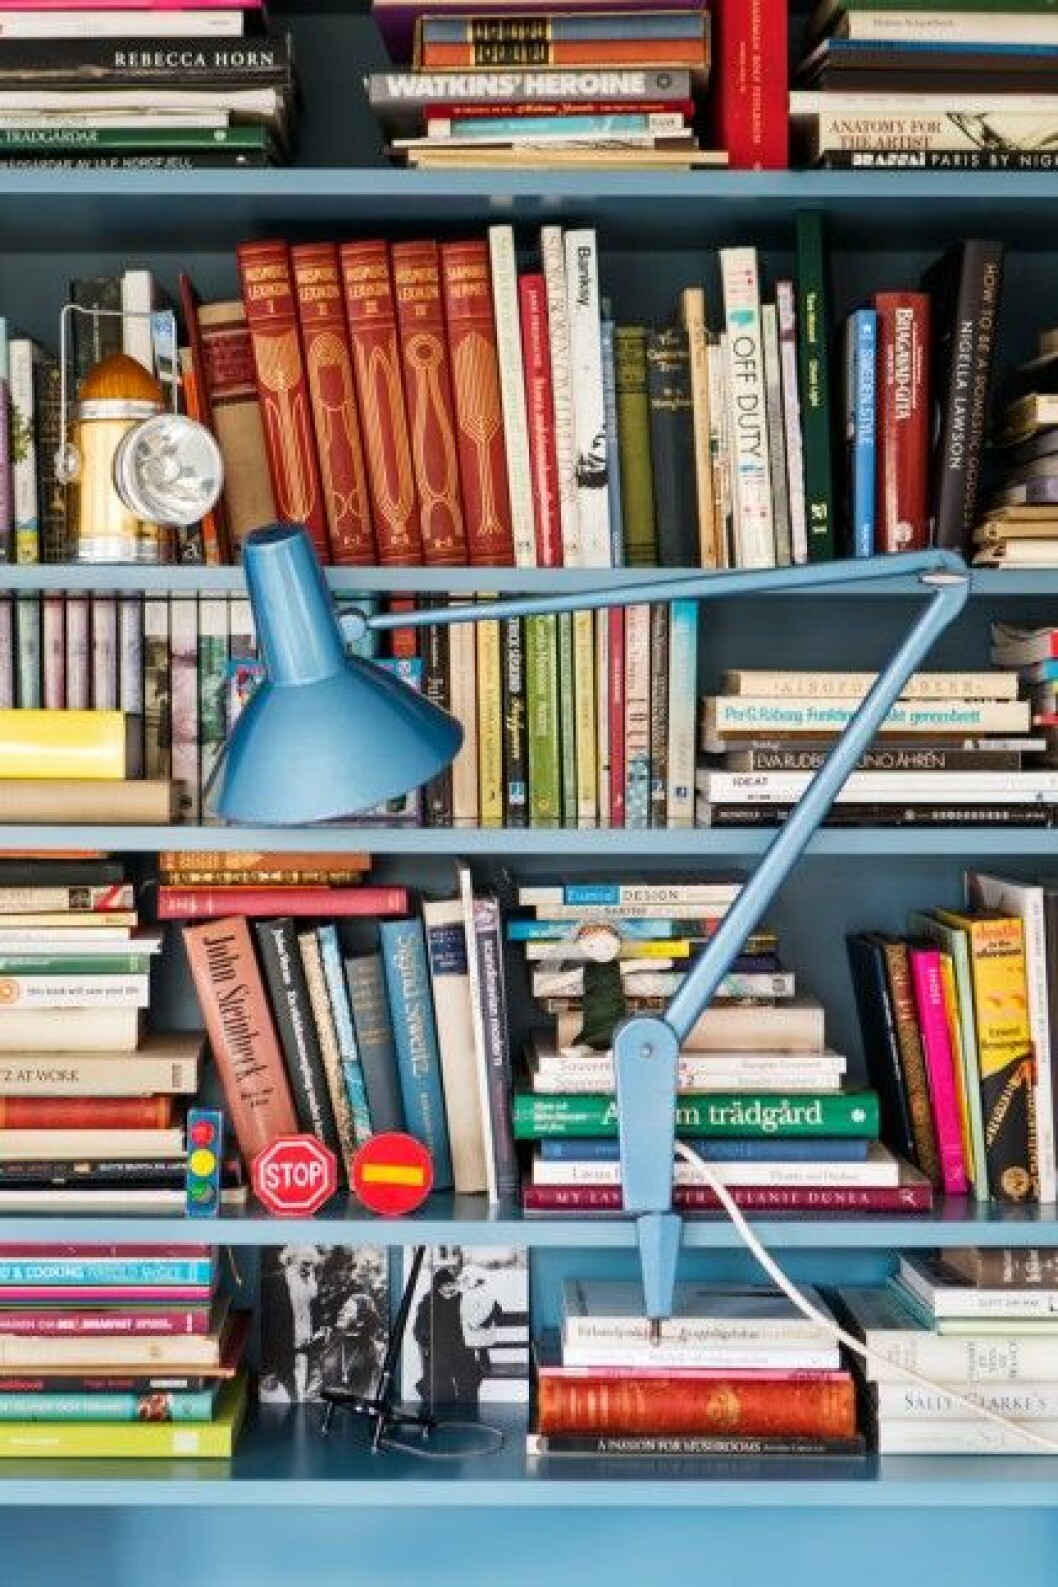 Färgkänslan är intuitiv hos paret Nadia och Jan. Först målades bokhyllan i retroturkost och senare hittades den gamla kontorslampan i exakt samma kulör.